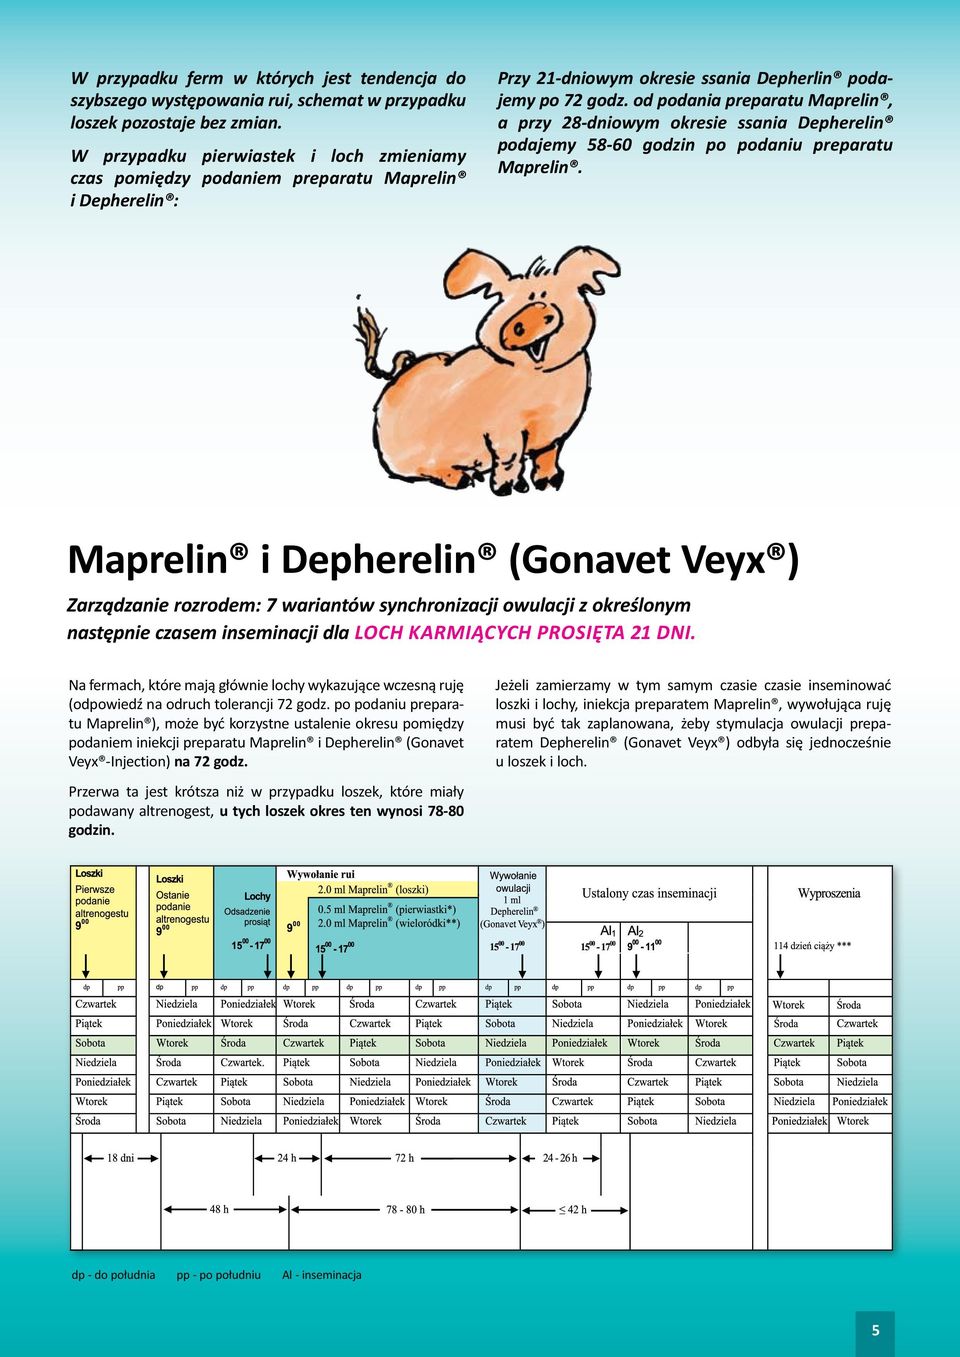 od podania preparatu Maprelin, a przy 28-dniowym okresie ssania Depherelin podajemy 58-60 godzin po podaniu preparatu Maprelin.